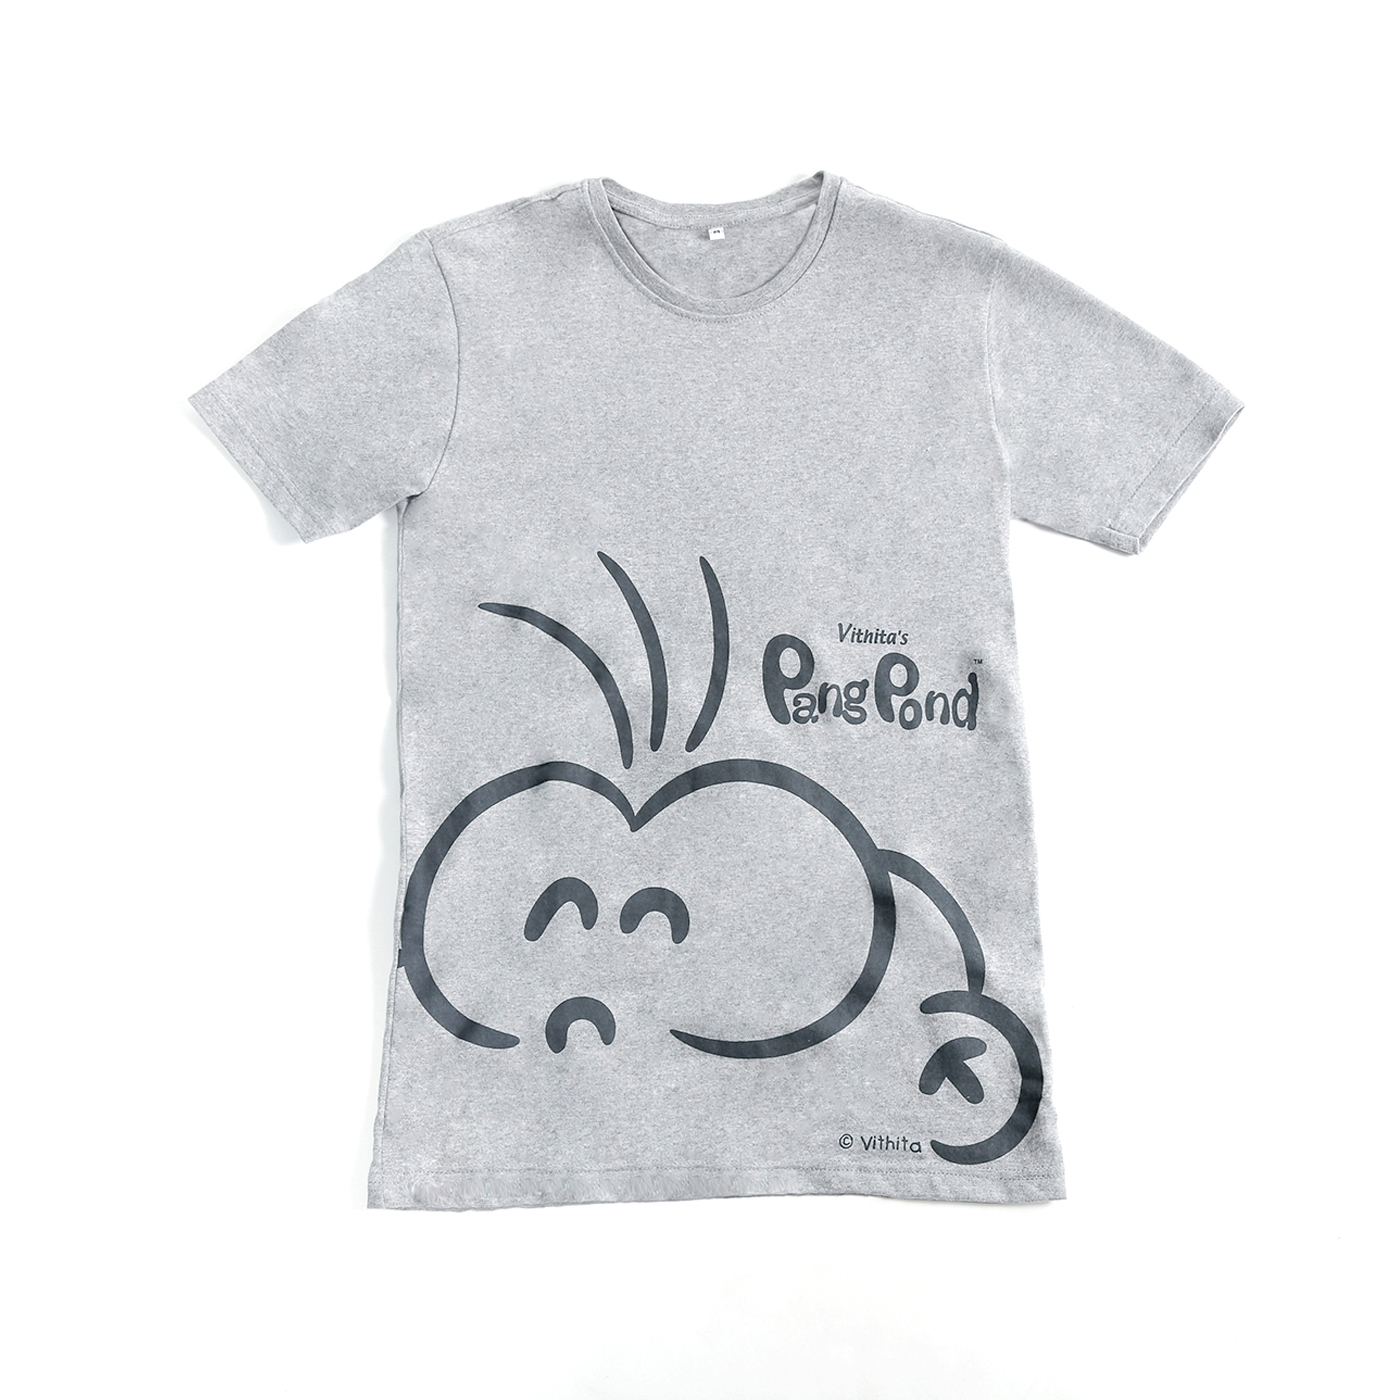 PangPond T-shirt: Gray [L]